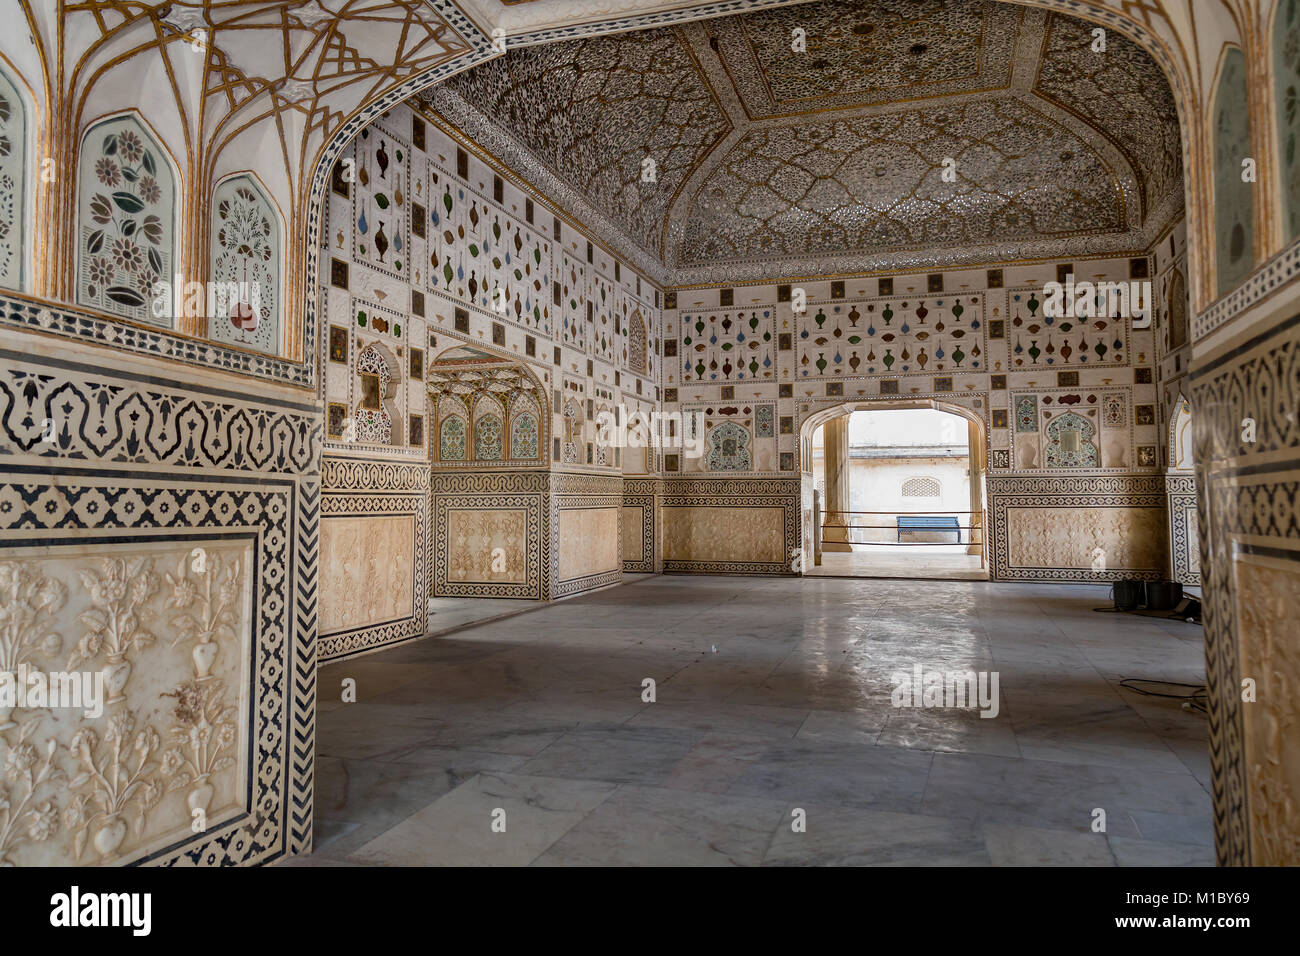 Amber Fort, Jaipur von Sheesh Mahal - komplizierte Architektur Wall Art mit Mosaik Gläser und Spiegel. Stockfoto